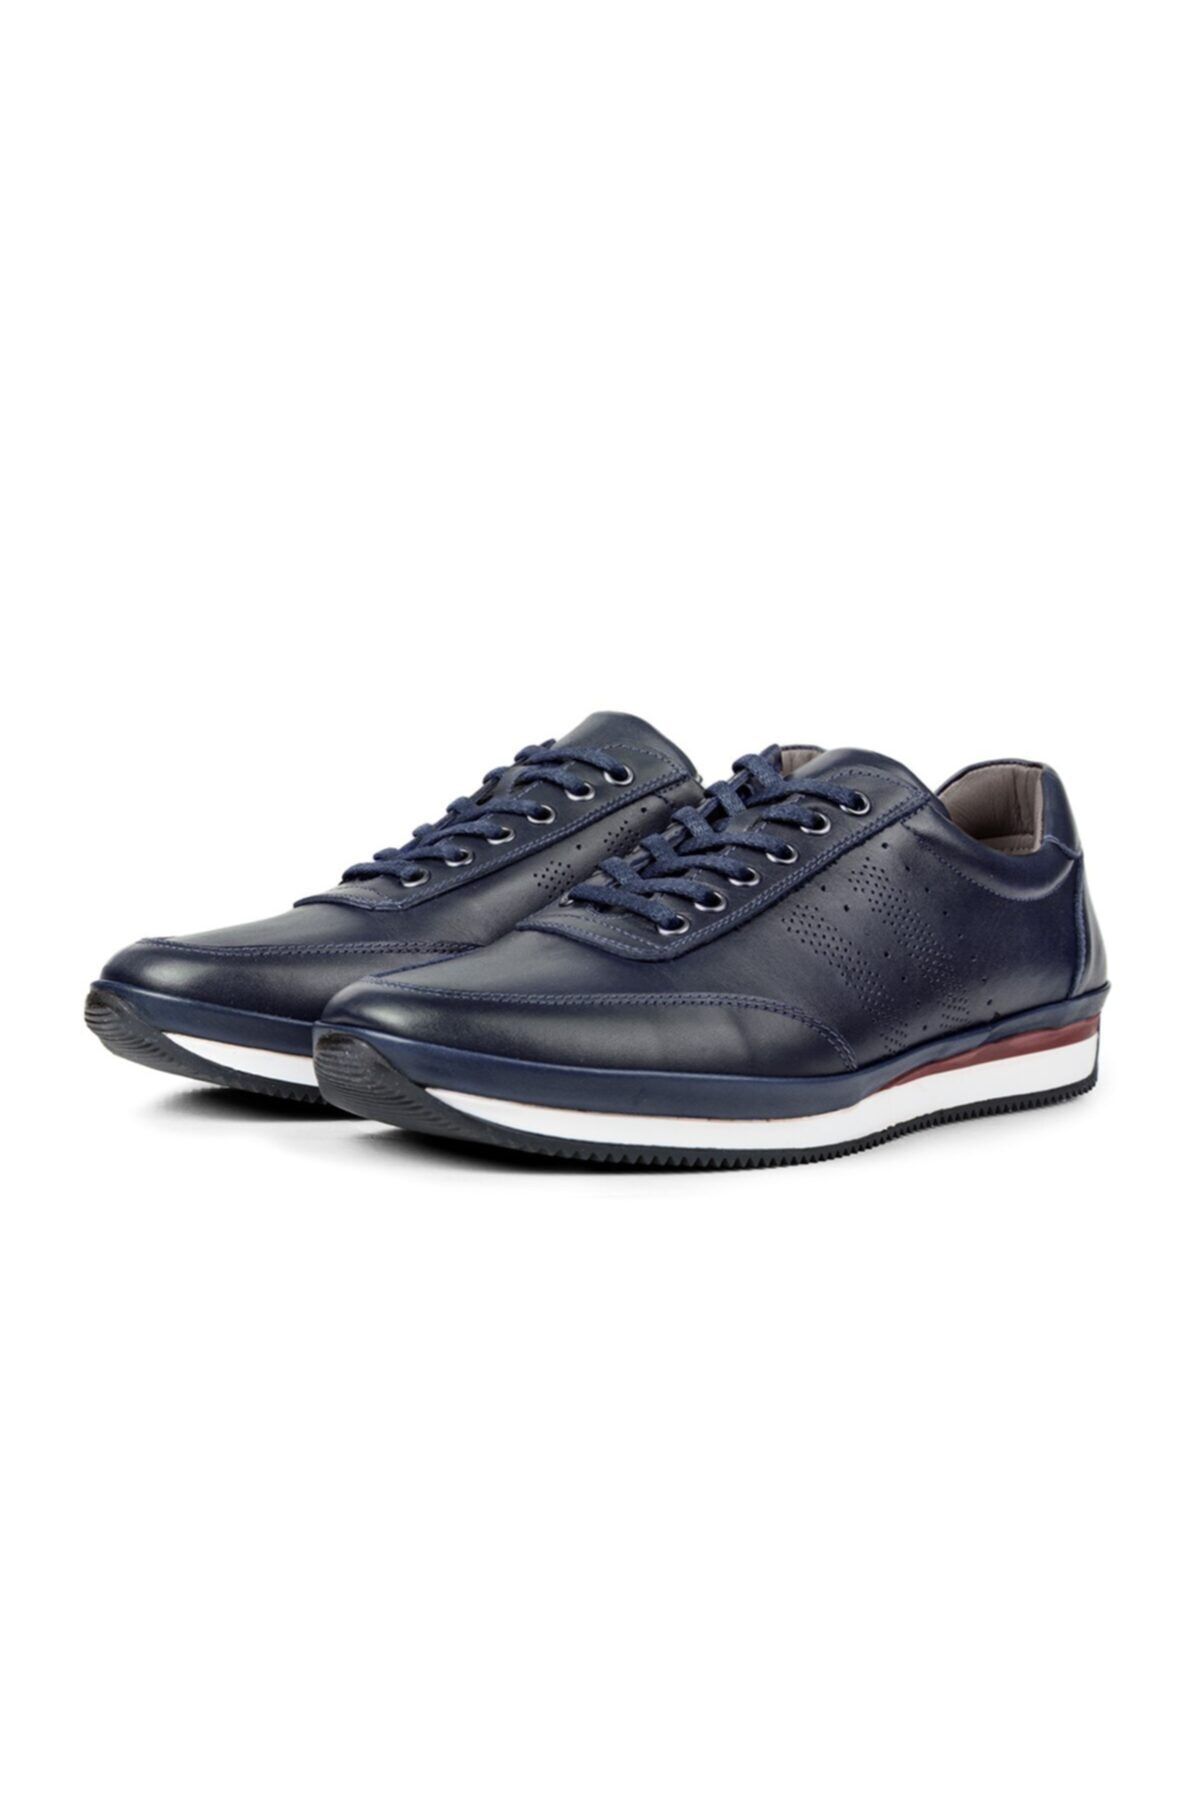 Ducavelli Fagola Hakiki Deri Erkek Günlük Ayakkabı, Casual Ayakkabı, %100 Deri Ayakkabı, 4 Mevsim